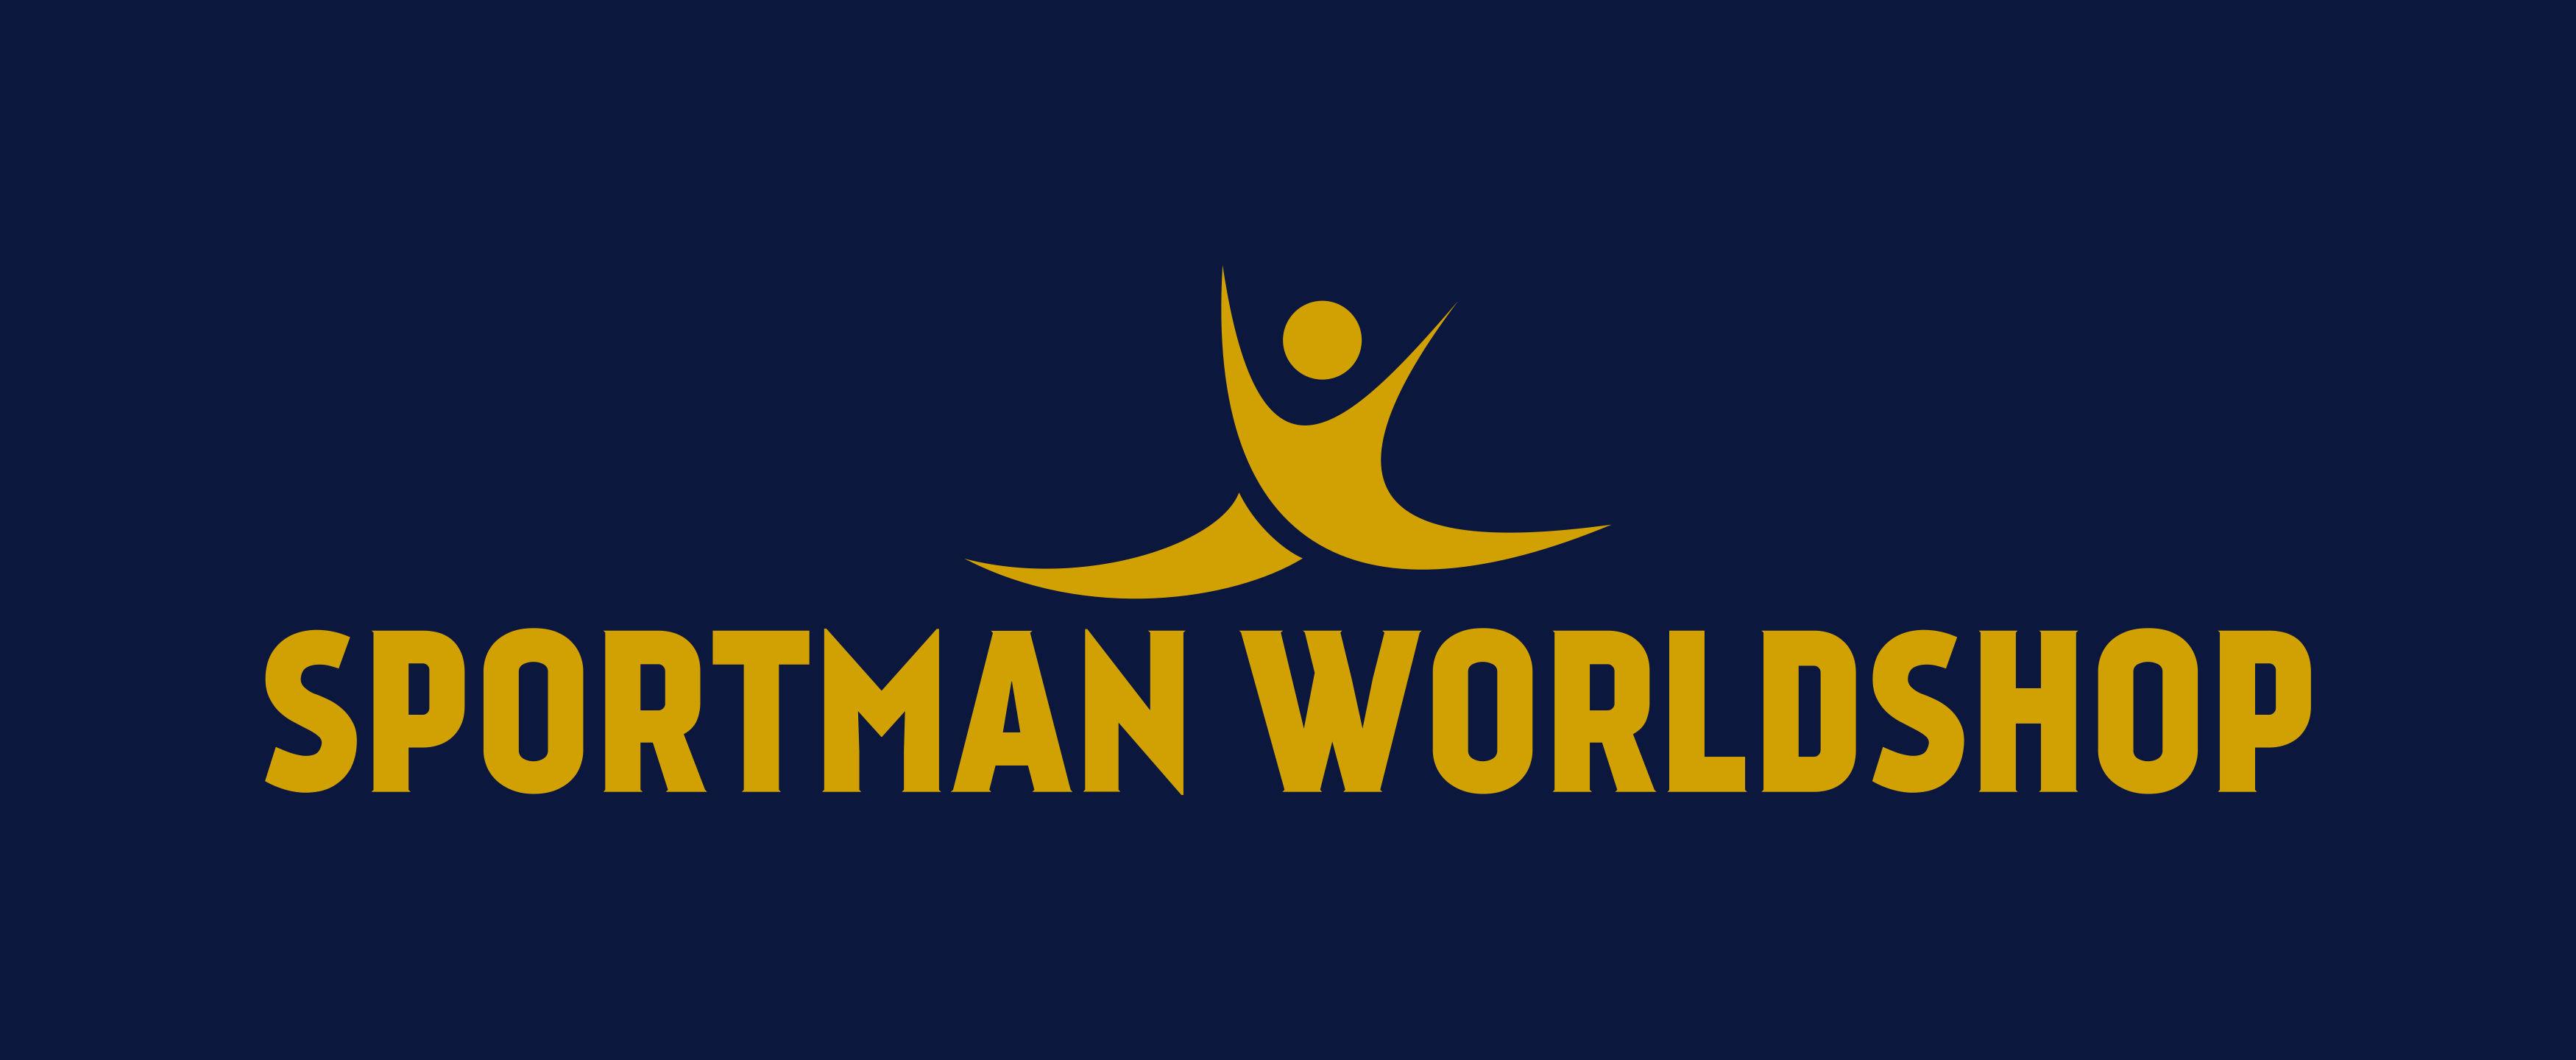 Sportman Worldshop